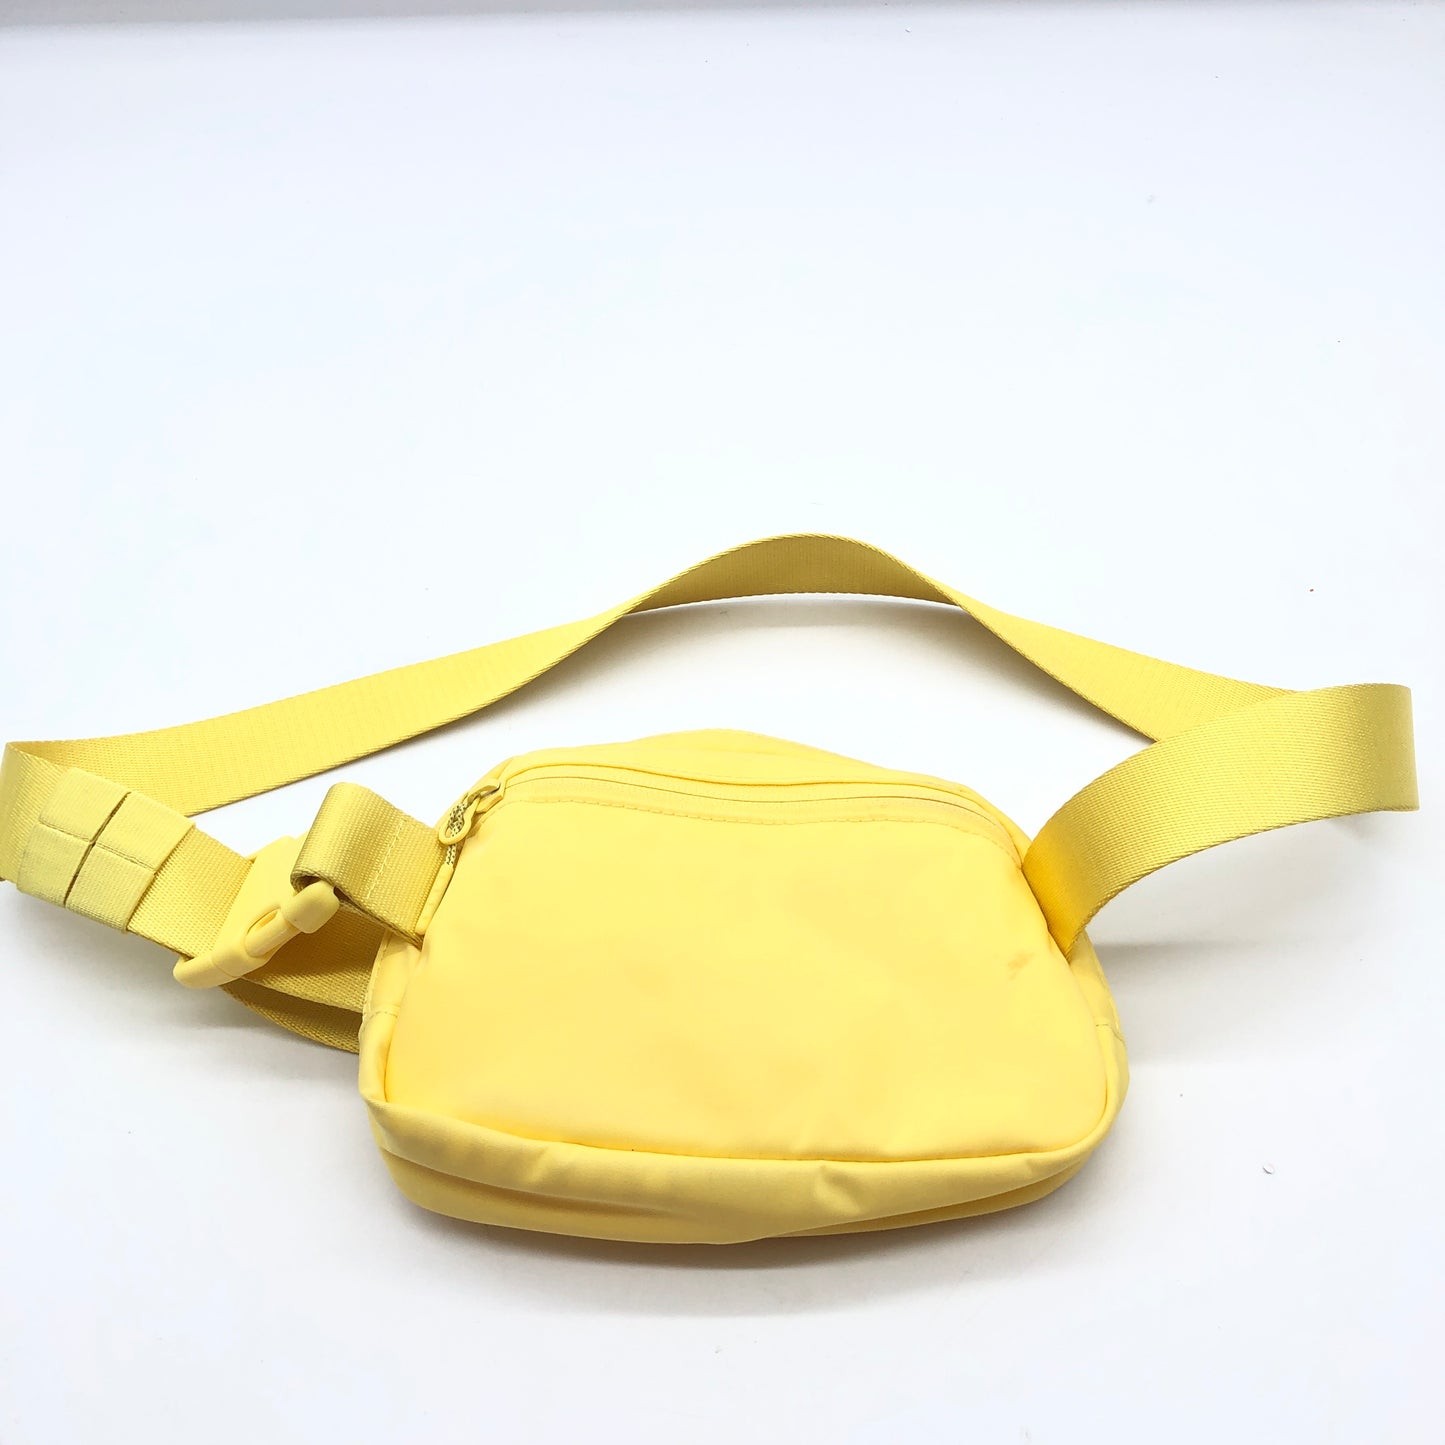 Belt Bag Designer By Lululemon  Size: Small